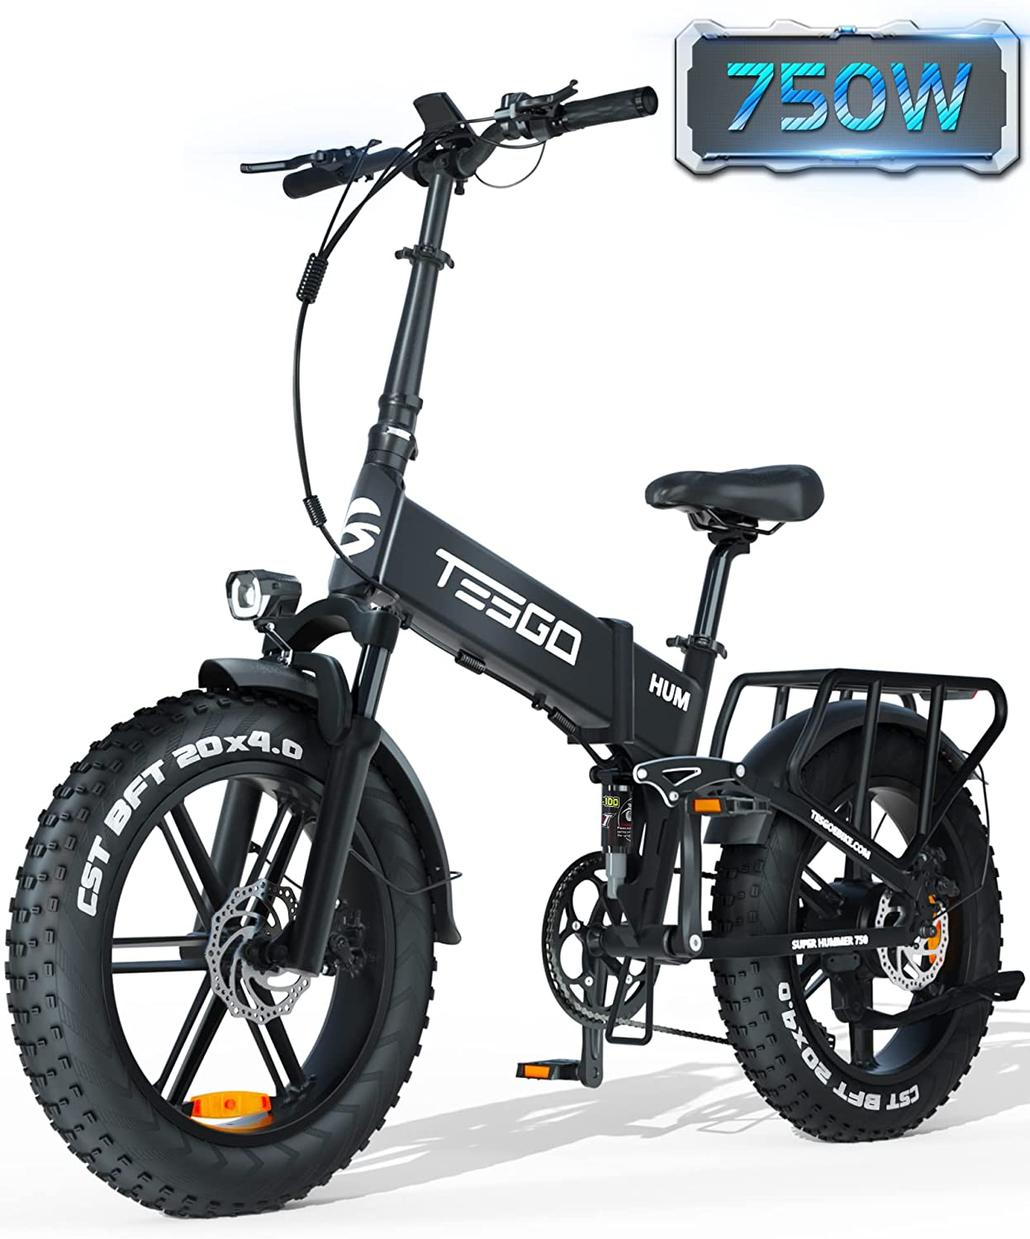 Best 750 Watt Electric Bike